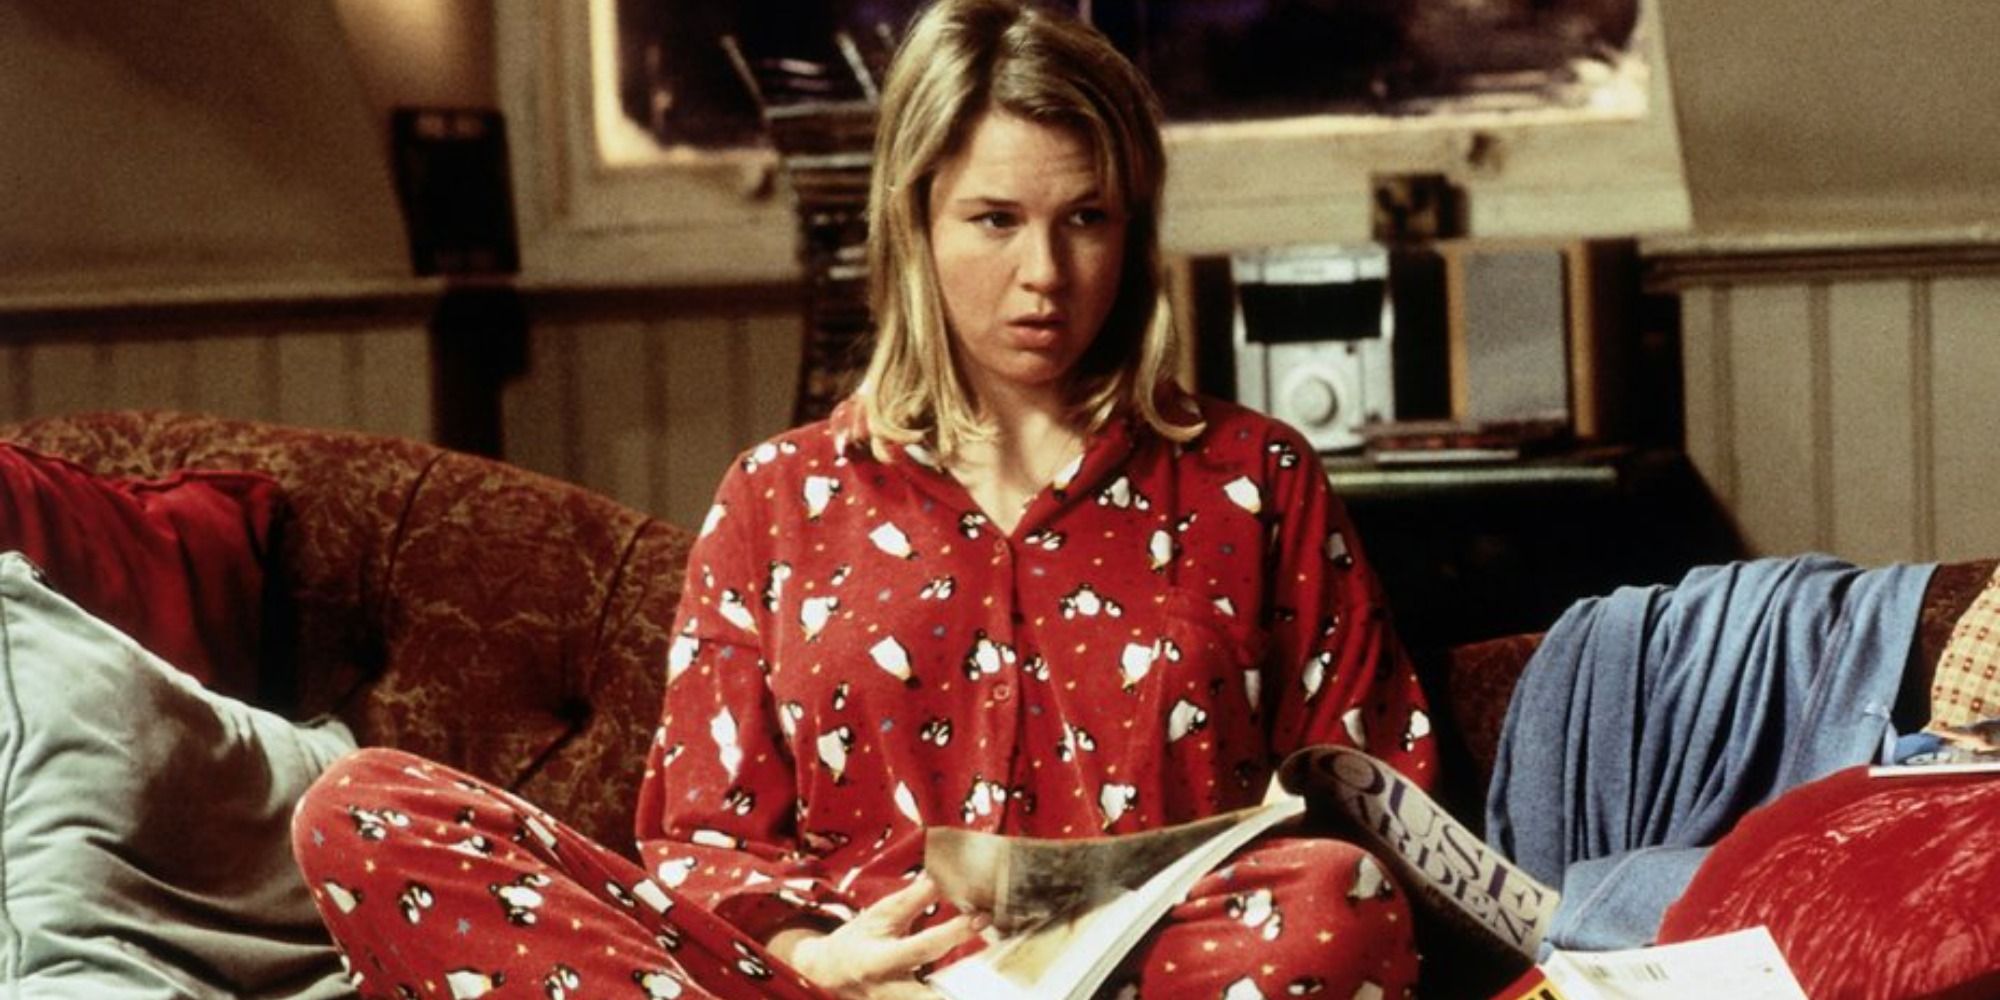 Rene Zellweger as Bridget Jones in her pyjamas looking confused on the couch in Bridget Jones's Diary.